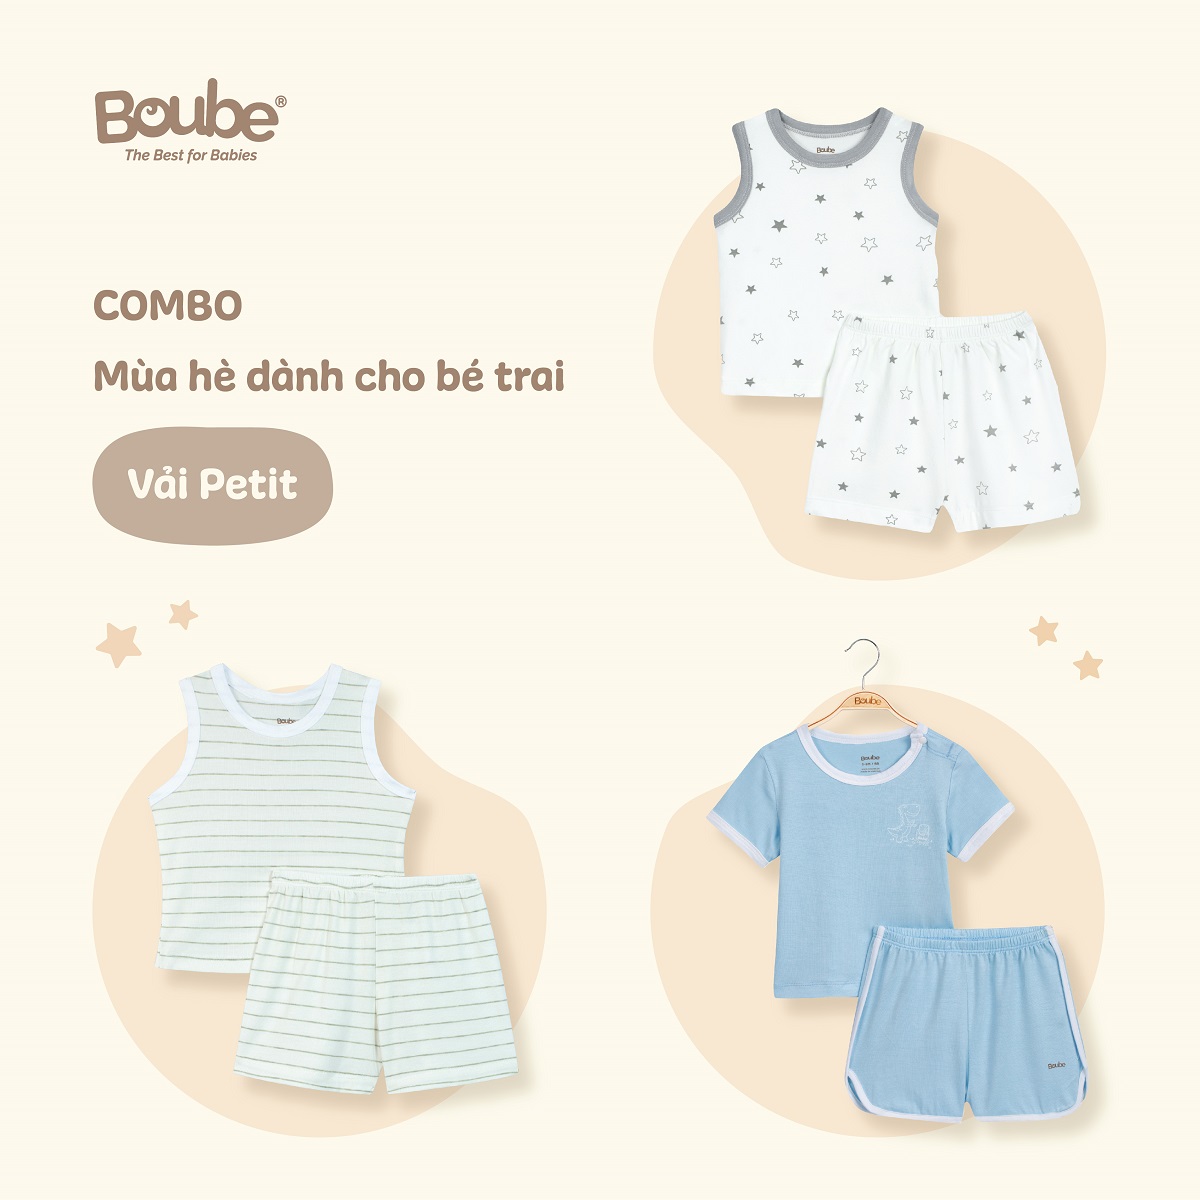 Combo 3 bộ quần áo mùa hè mát mẻ cho bé trai Boube, chất vải petit mềm mịn, thoáng mát - Full size cho bé 0-24M (3-15kg)